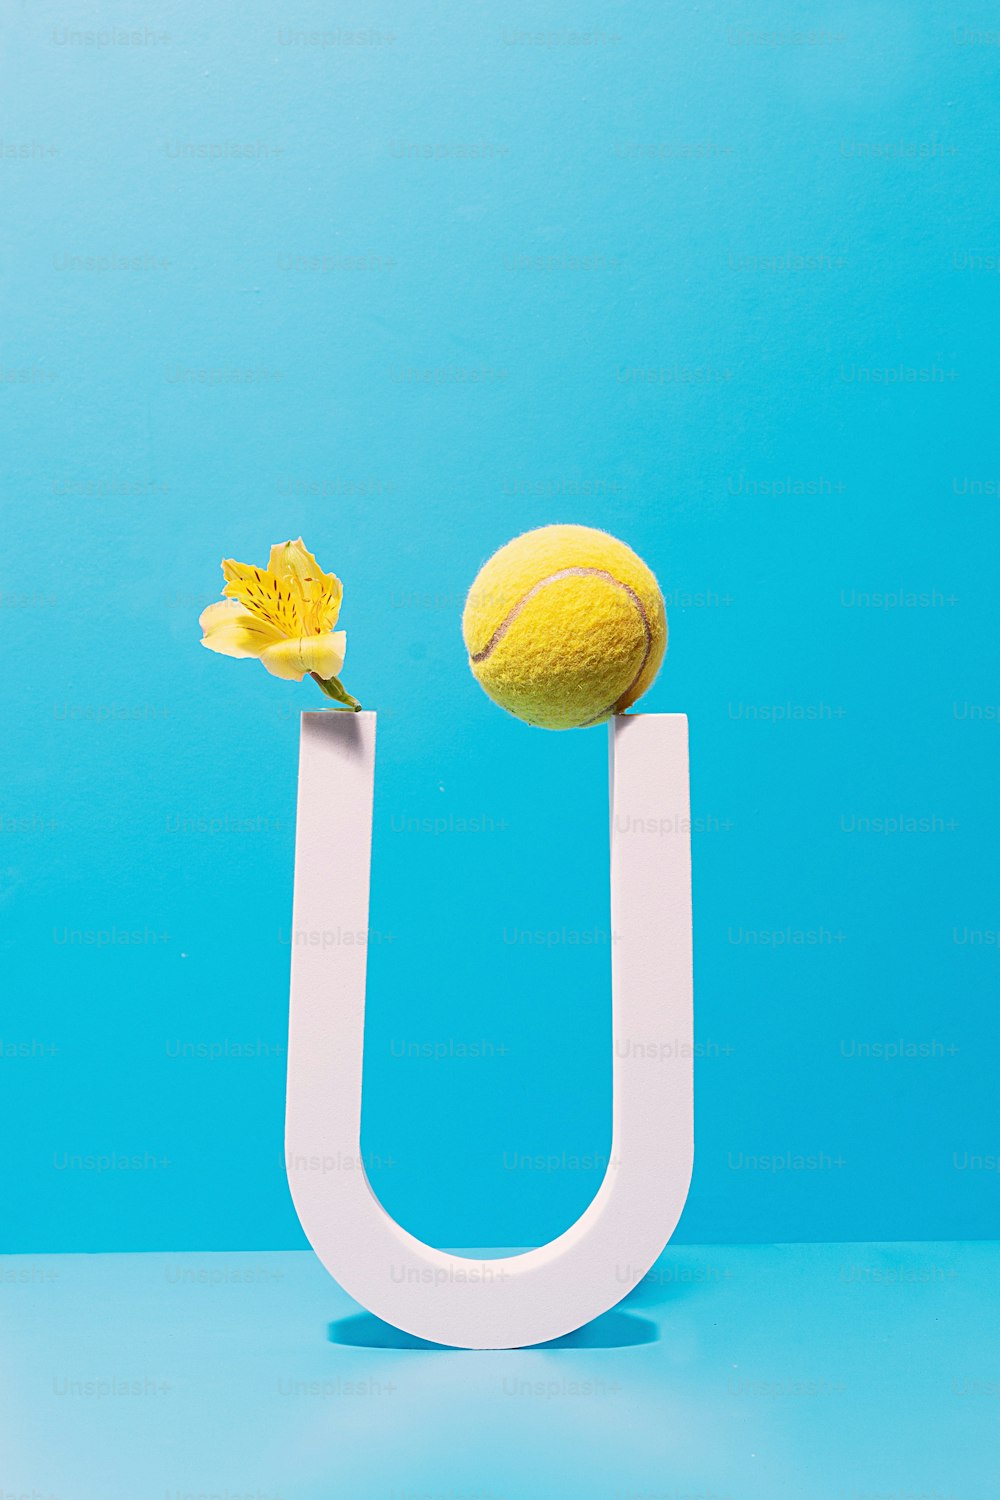 eine gelbe Blume und ein Tennisball auf einem weißen Buchstaben u